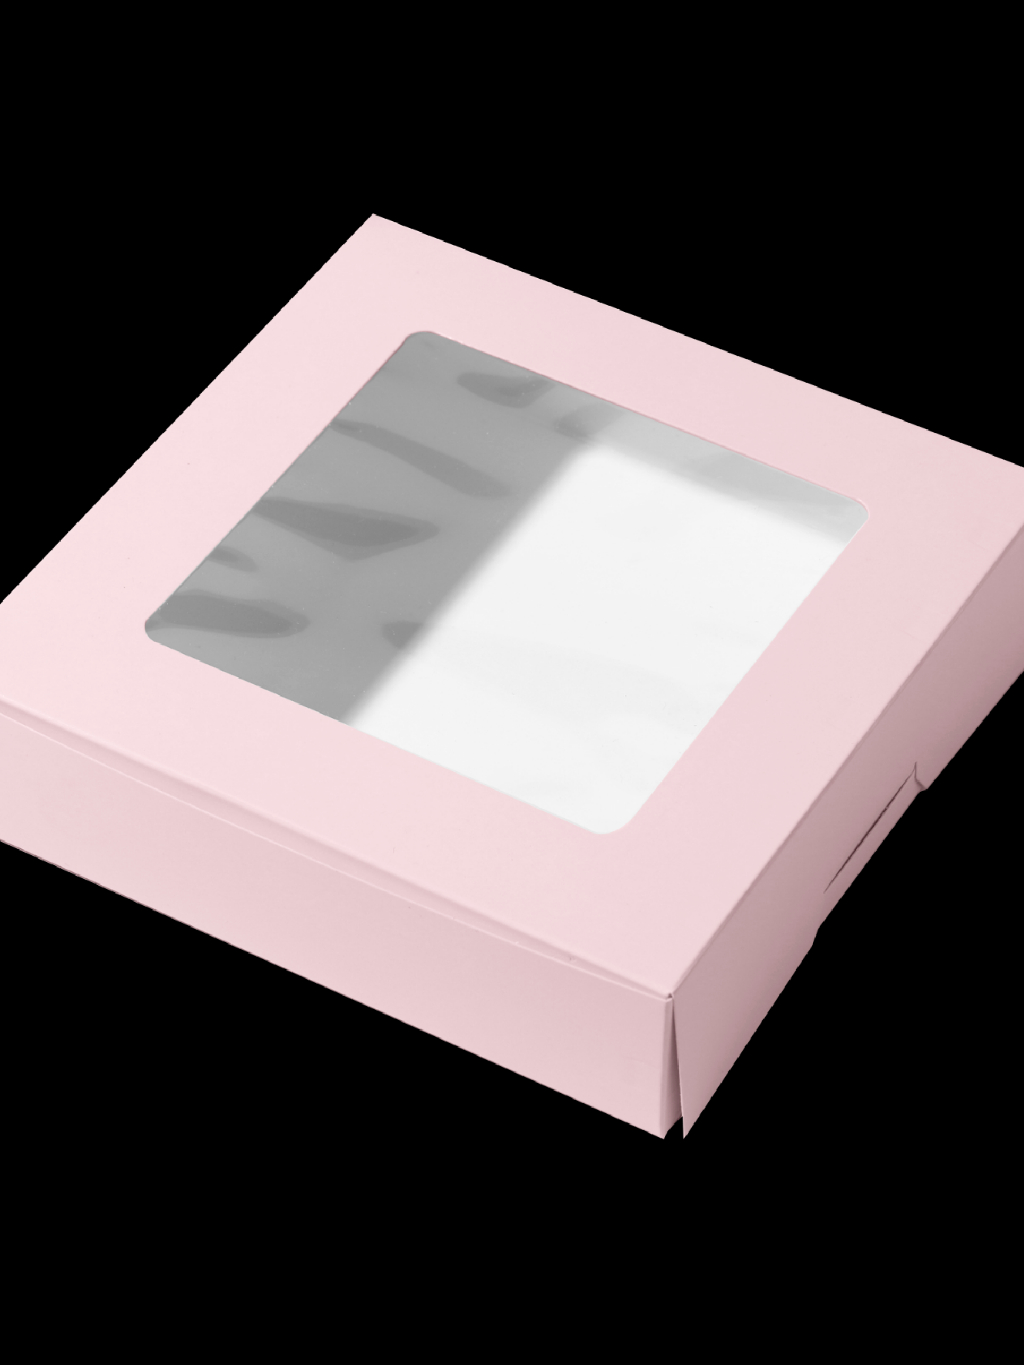 กล่อง2-ปอนด์-สูง6-5ซม-แพ็ค-20-ใบ-กล่องใส่ขนมกล่องขนม-กล่องบราวนี่-ผลิตจากกระดาษคุณภาพ-สีพาสเทล-boxlicious-th